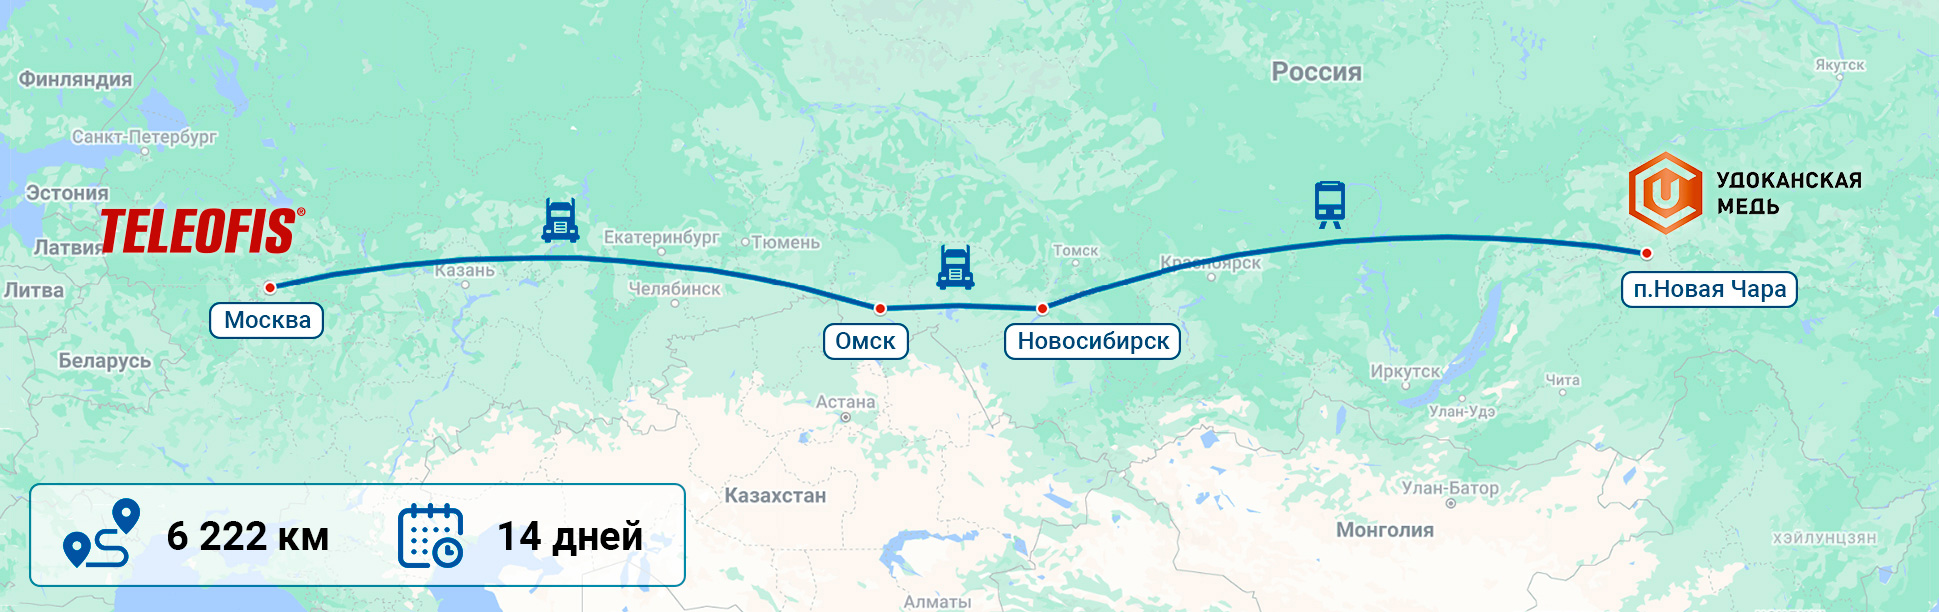 Промышленные терминалы маршрут доставки из Москвы в регионы